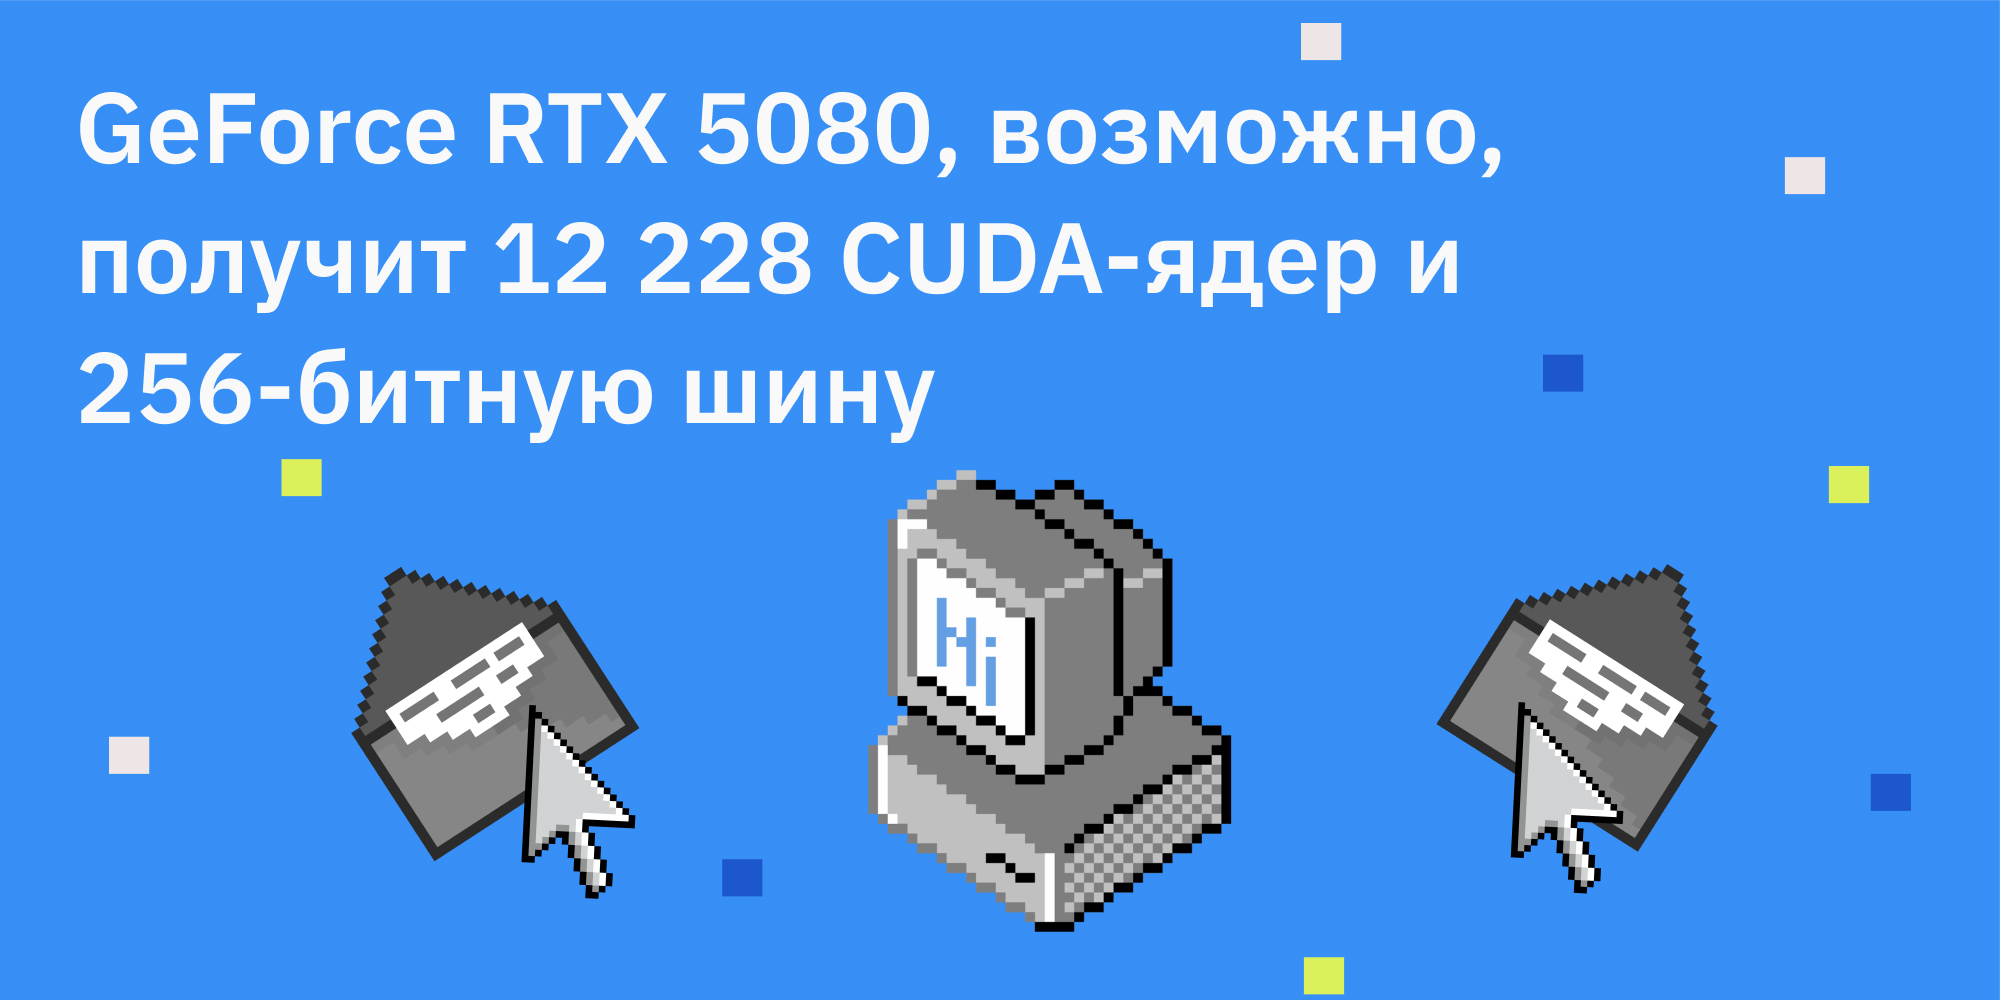 🆕 GeForce RTX 5080, возможно, получит 12 228 CUDA-ядер и 256-битную шину